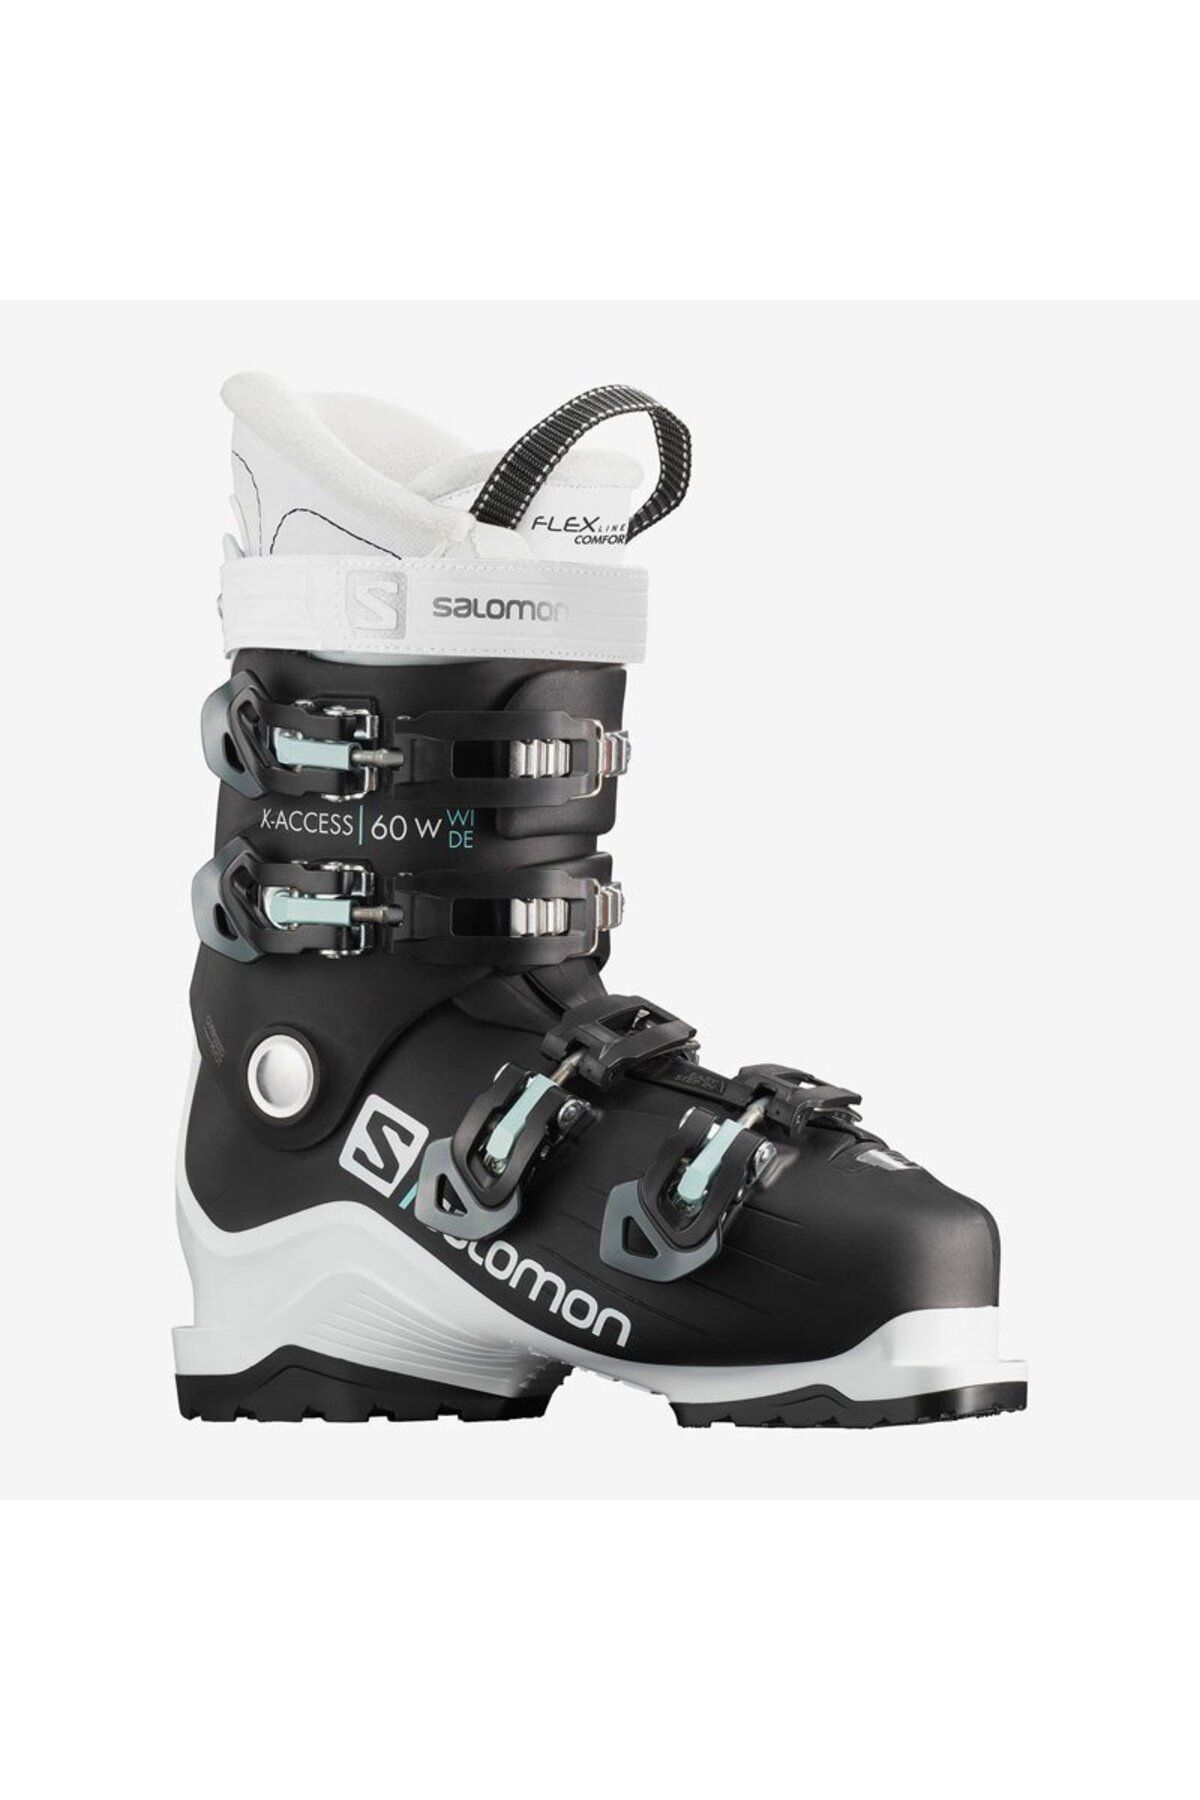 Salomon X Access 60 Wide Kadın Kayak Ayakkabısı-l40851200